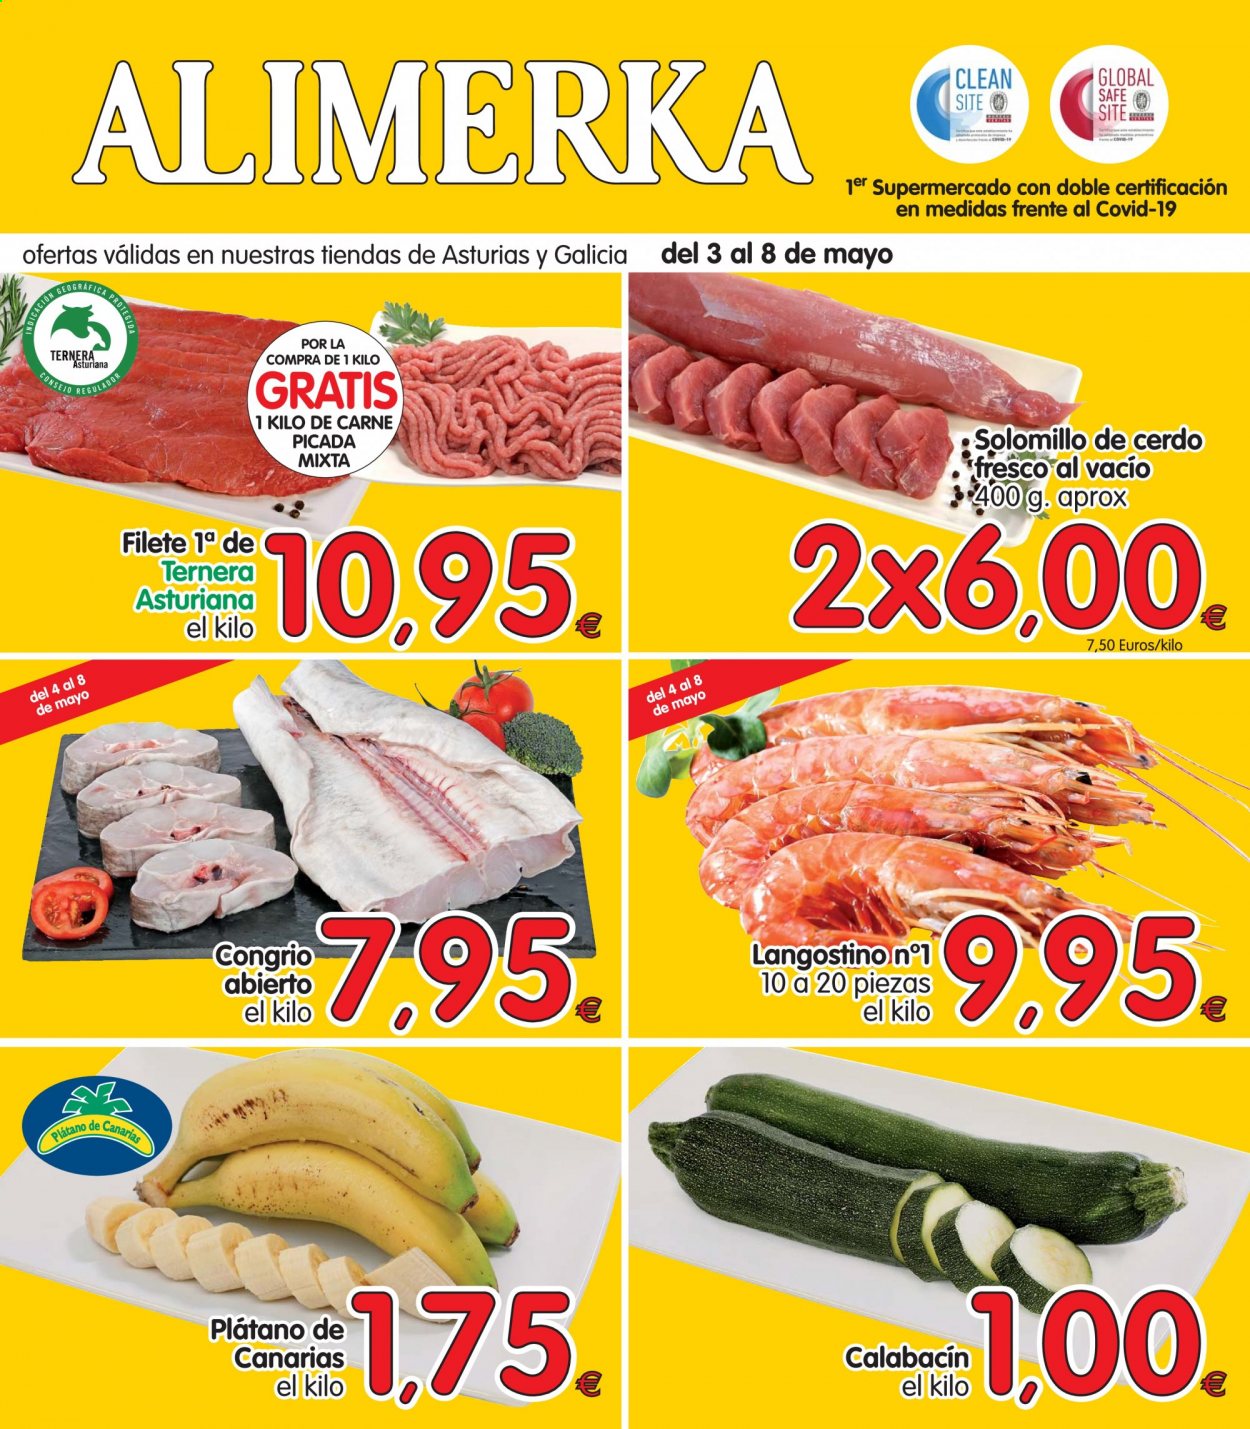 thumbnail - Folleto actual Alimerka - 03/05/21 - 08/05/21 - Ventas - solomillo, solomillo de cerdo, carne de ternera, carne picada, plátano, calabacín, langostino. Página 1.